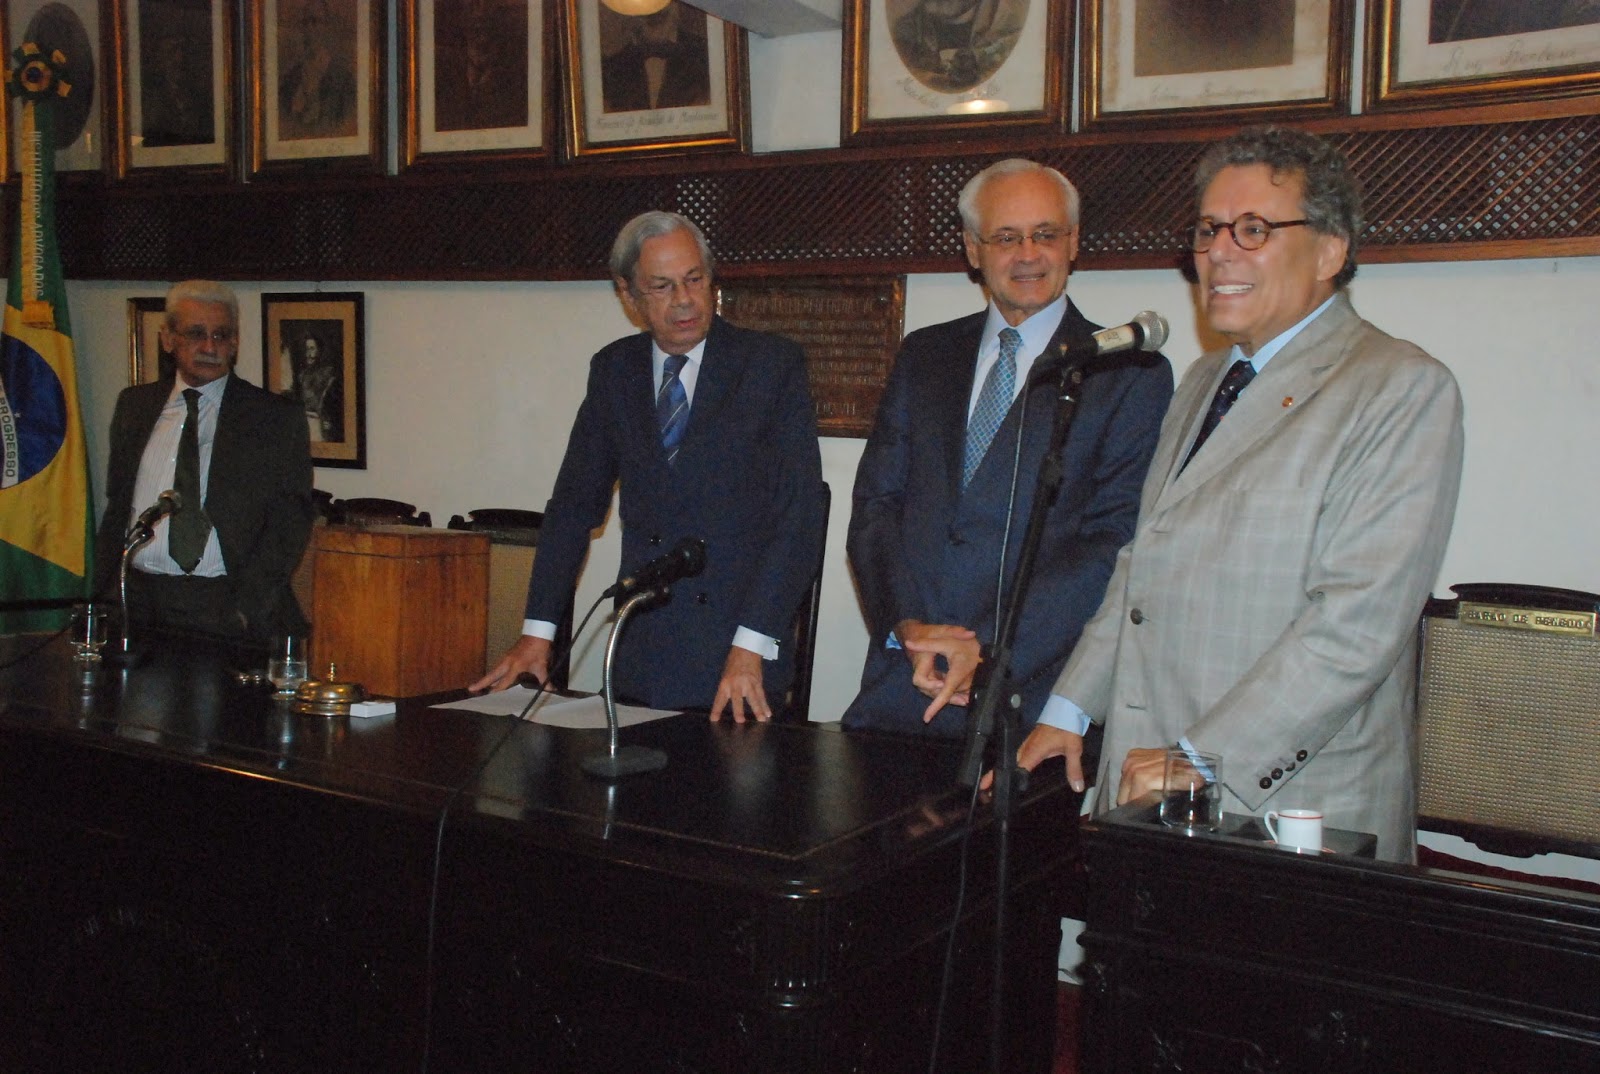 Fernando Fragoso, ex-Presidente, e Técio Lins e Silva, eleito o atual Presidente do IAB, se confraternizam durante a votação